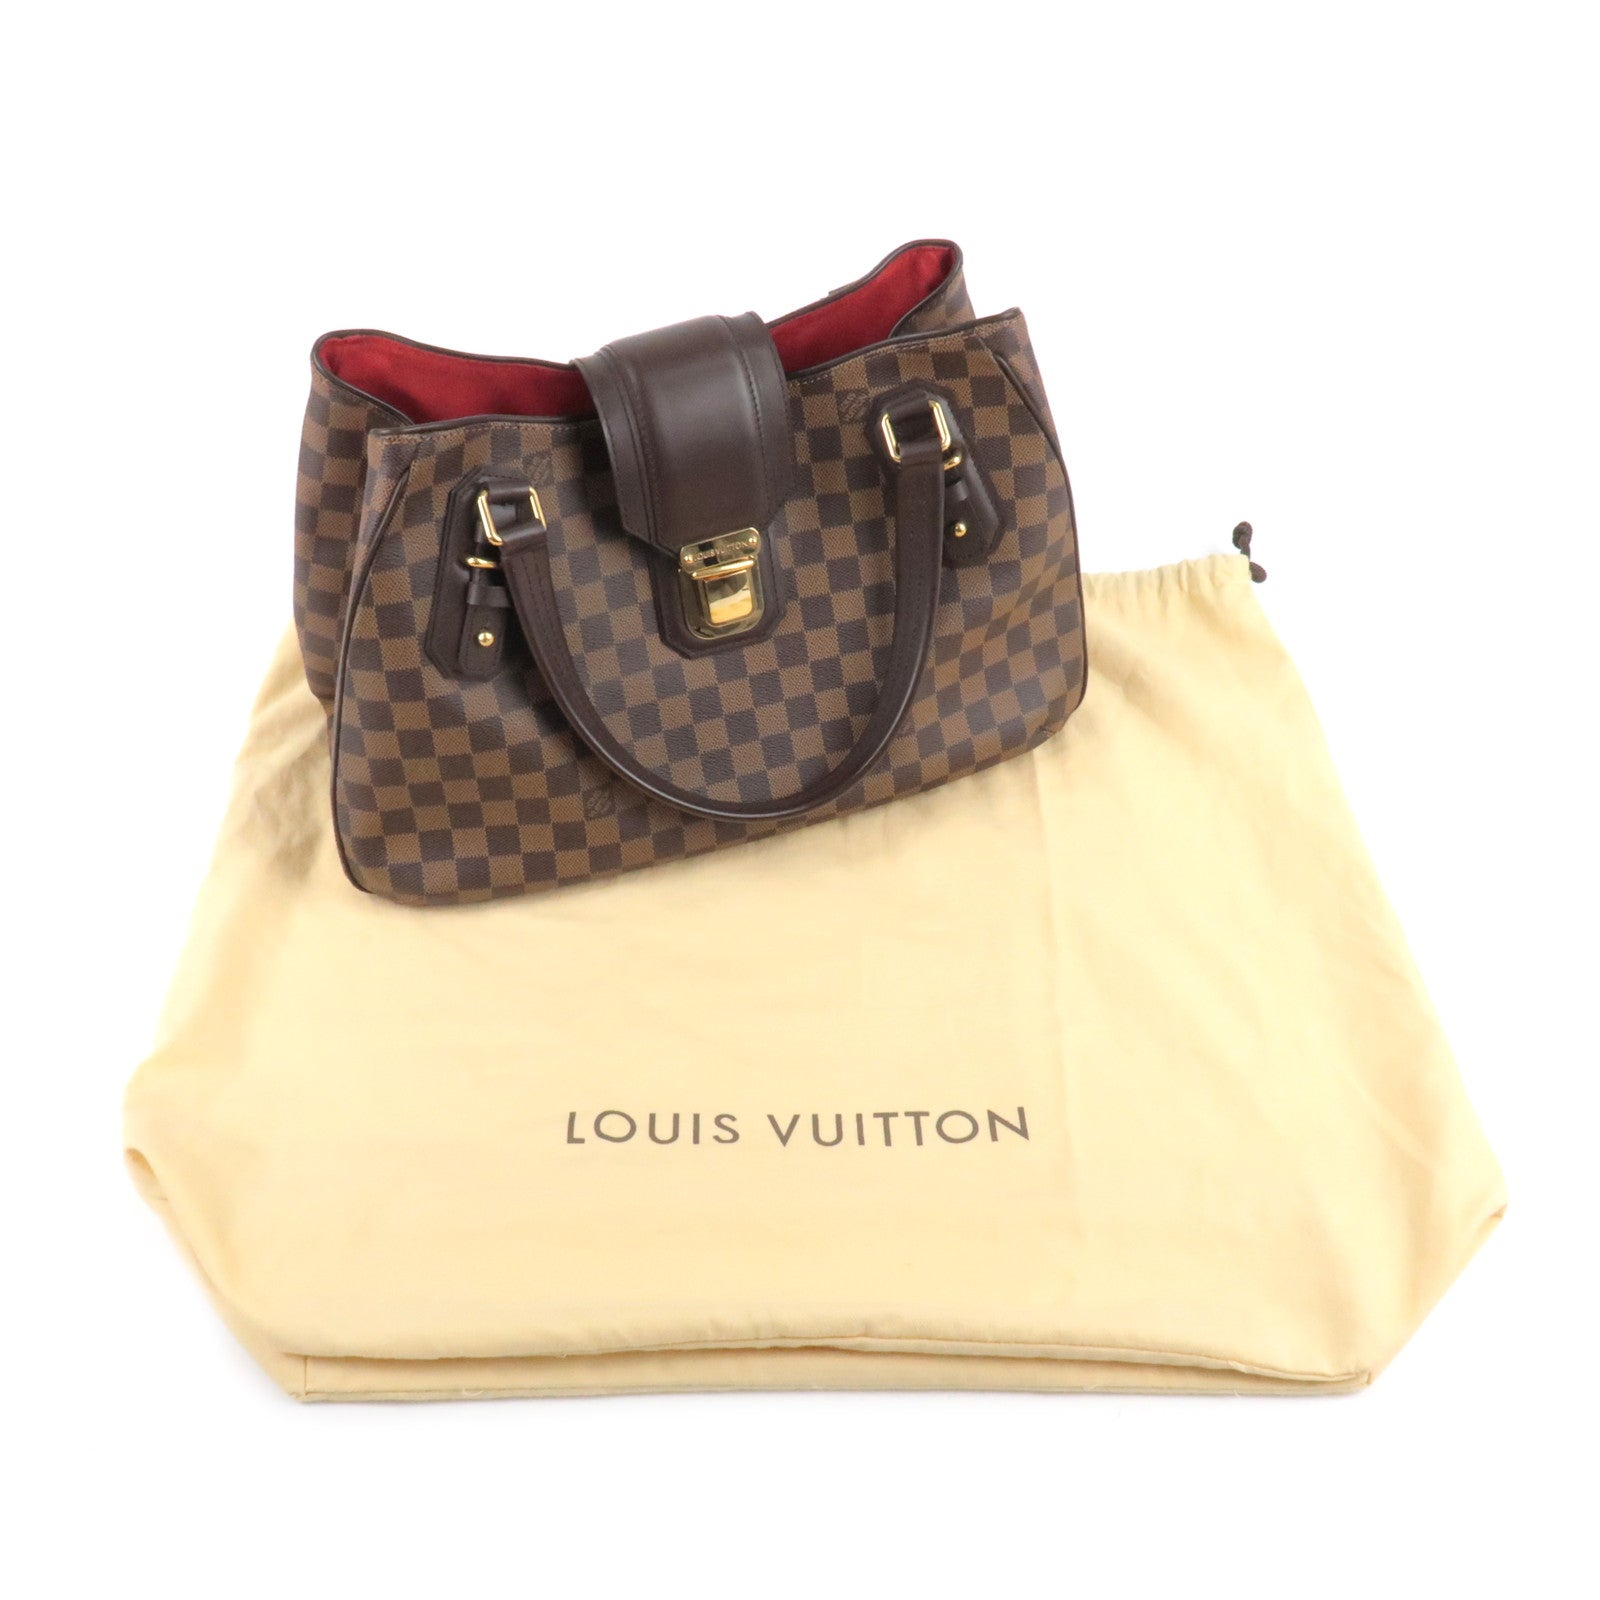 Louis Vuitton Damier Ebene Griet - Brown Totes, Handbags